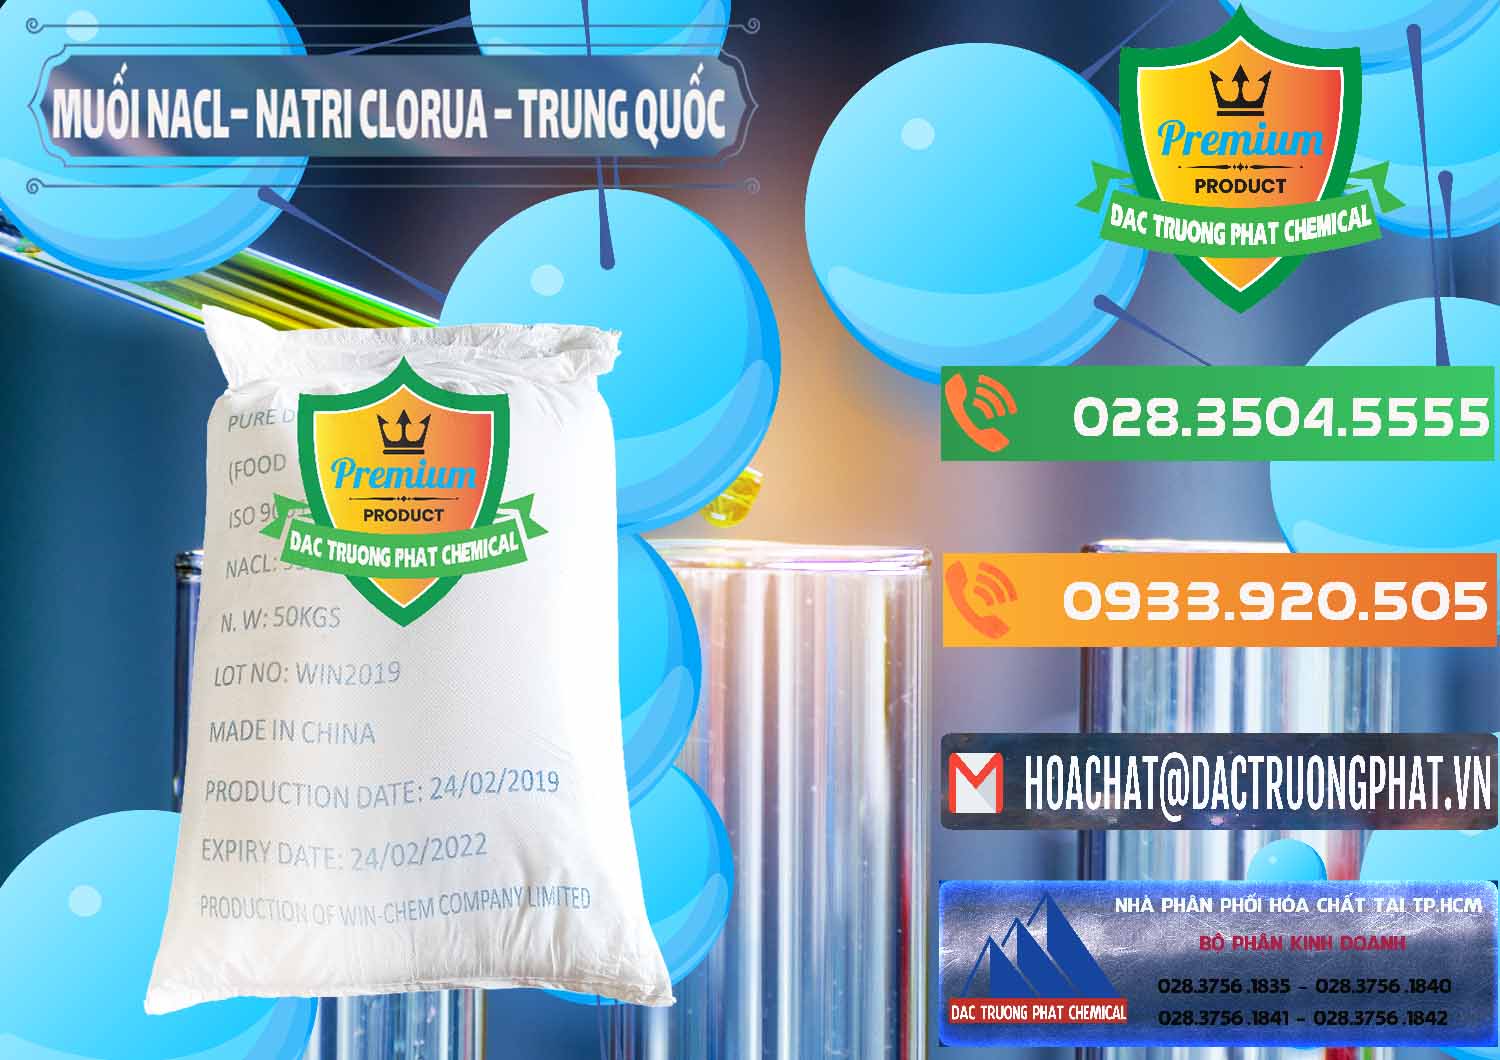 Nơi chuyên bán & cung cấp Muối NaCL – Sodium Chloride Trung Quốc China - 0097 - Cty chuyên phân phối & nhập khẩu hóa chất tại TP.HCM - hoachatxulynuoc.com.vn